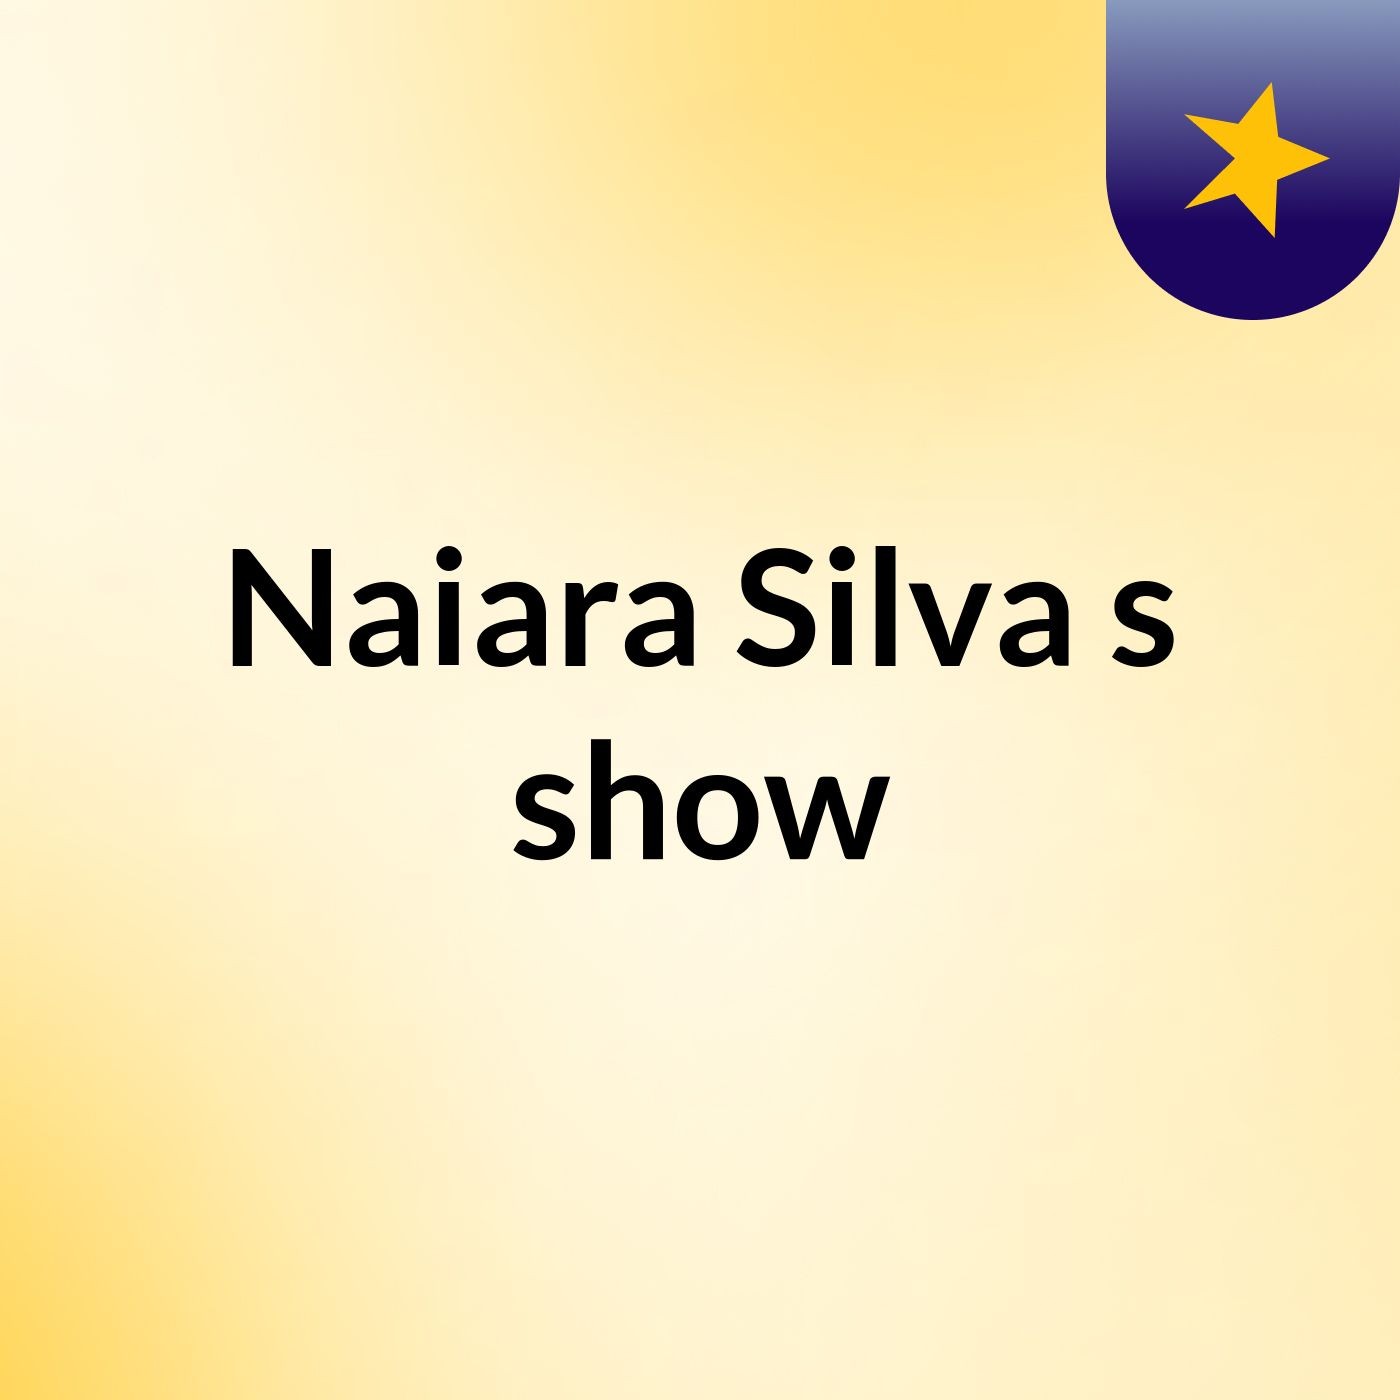 Naiara Silva's show